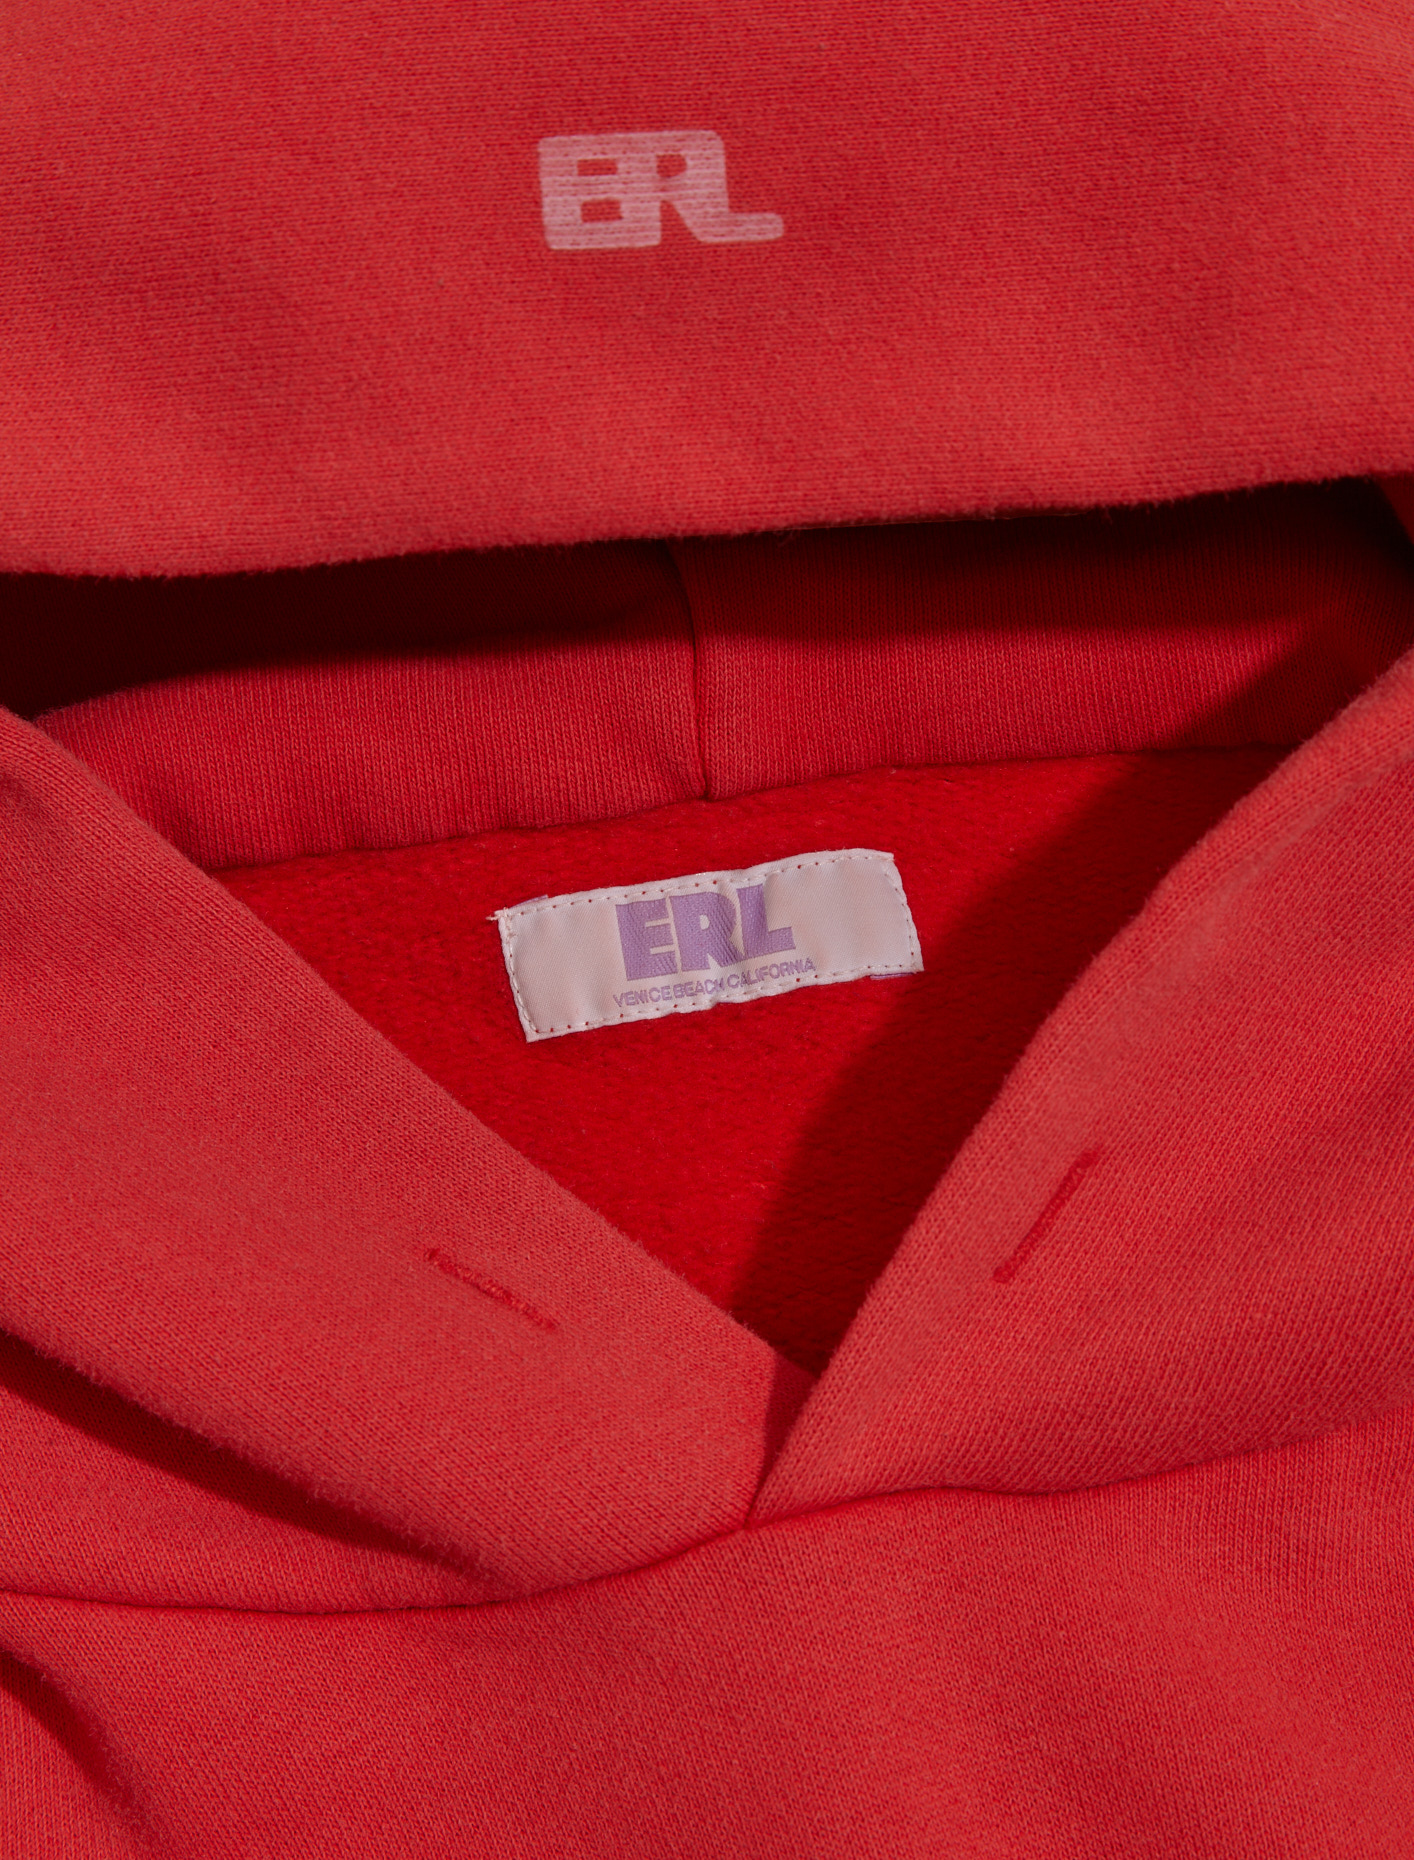 ERL Swirl Hoodie in Red | Voo Store Berlin | Worldwide Shipping